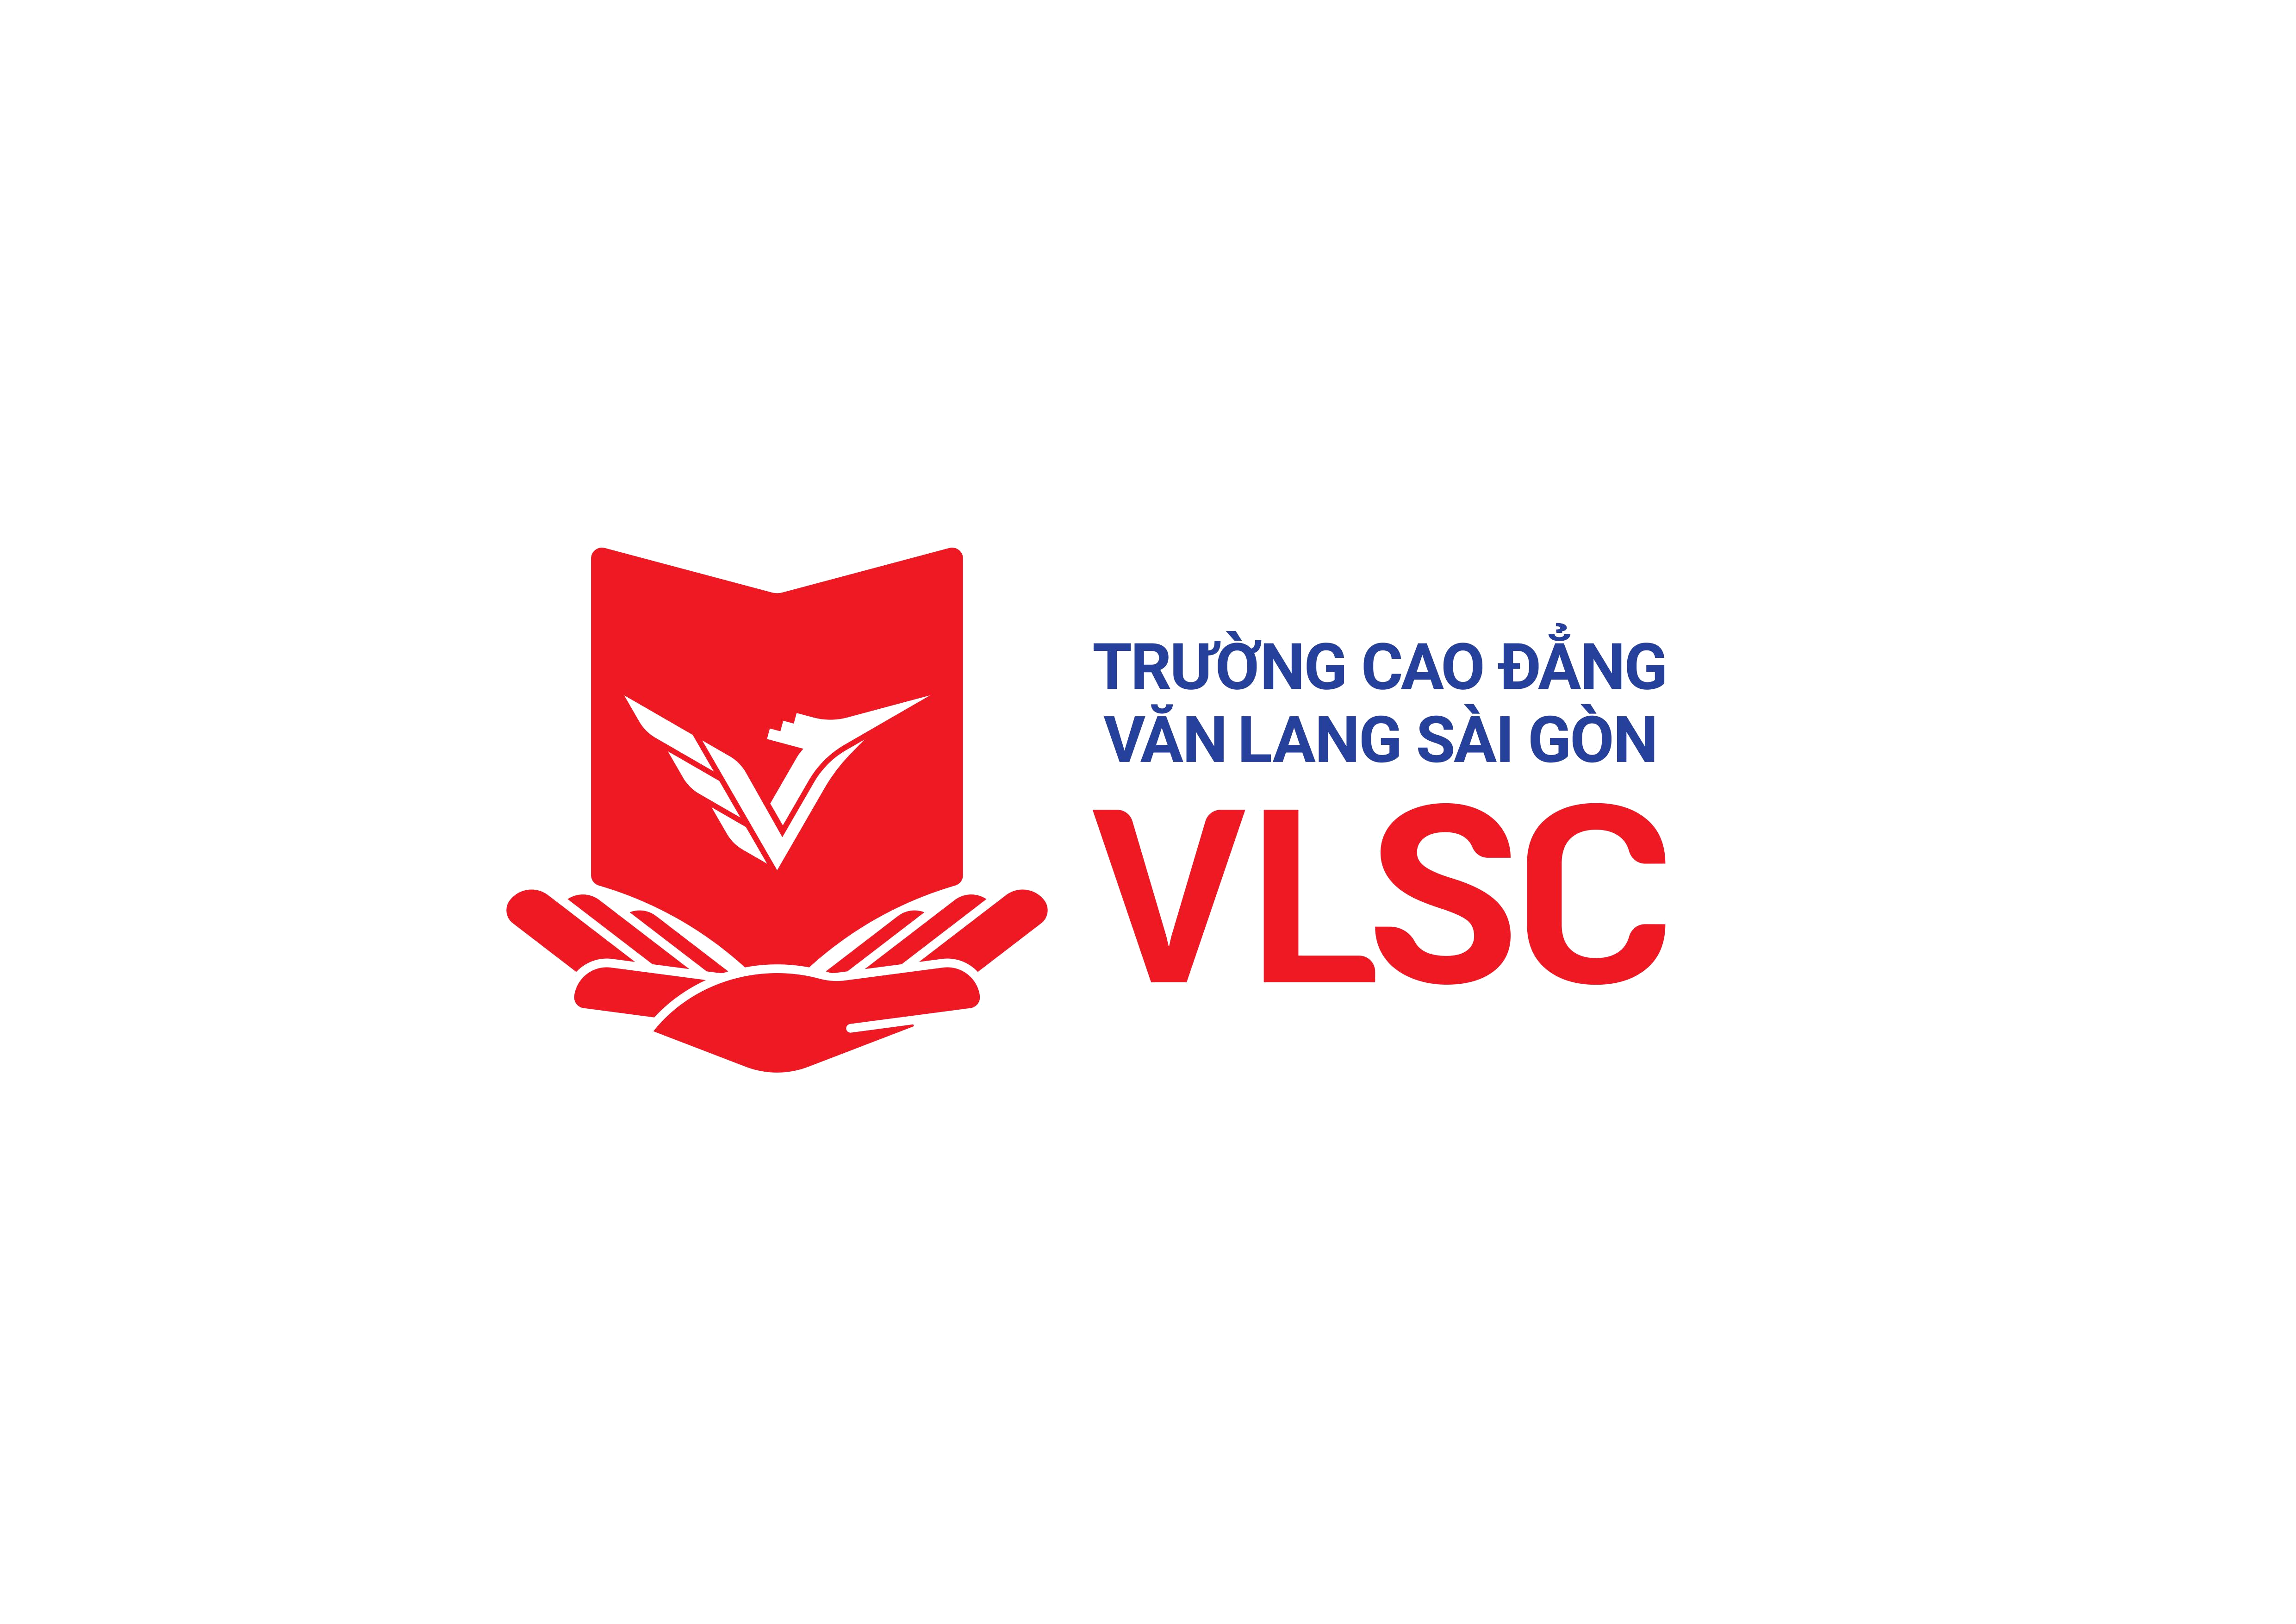 Biểu mẫu văn bản hành chính trong Trường Cao đẳng Văn Lang Sài Gòn (VLSC)